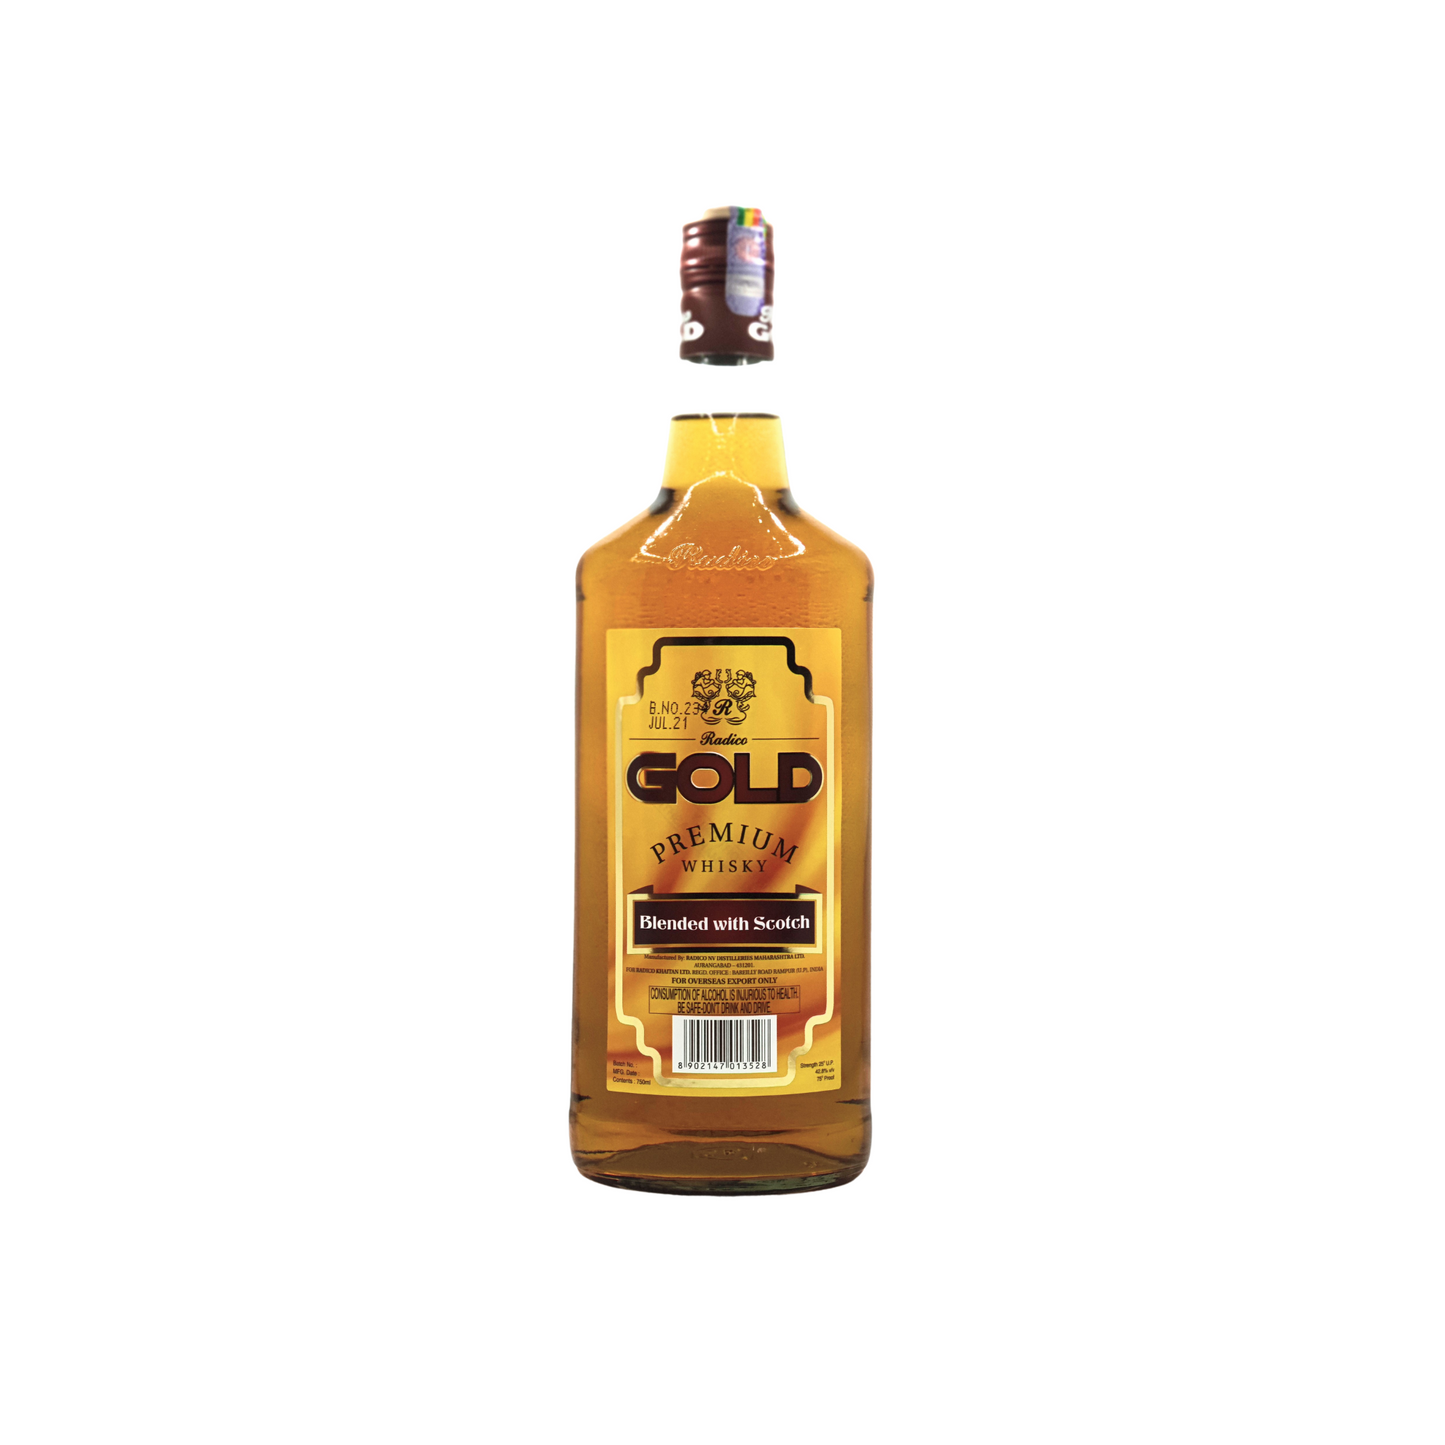 750 millilitre bottle of radico gold premium whisky